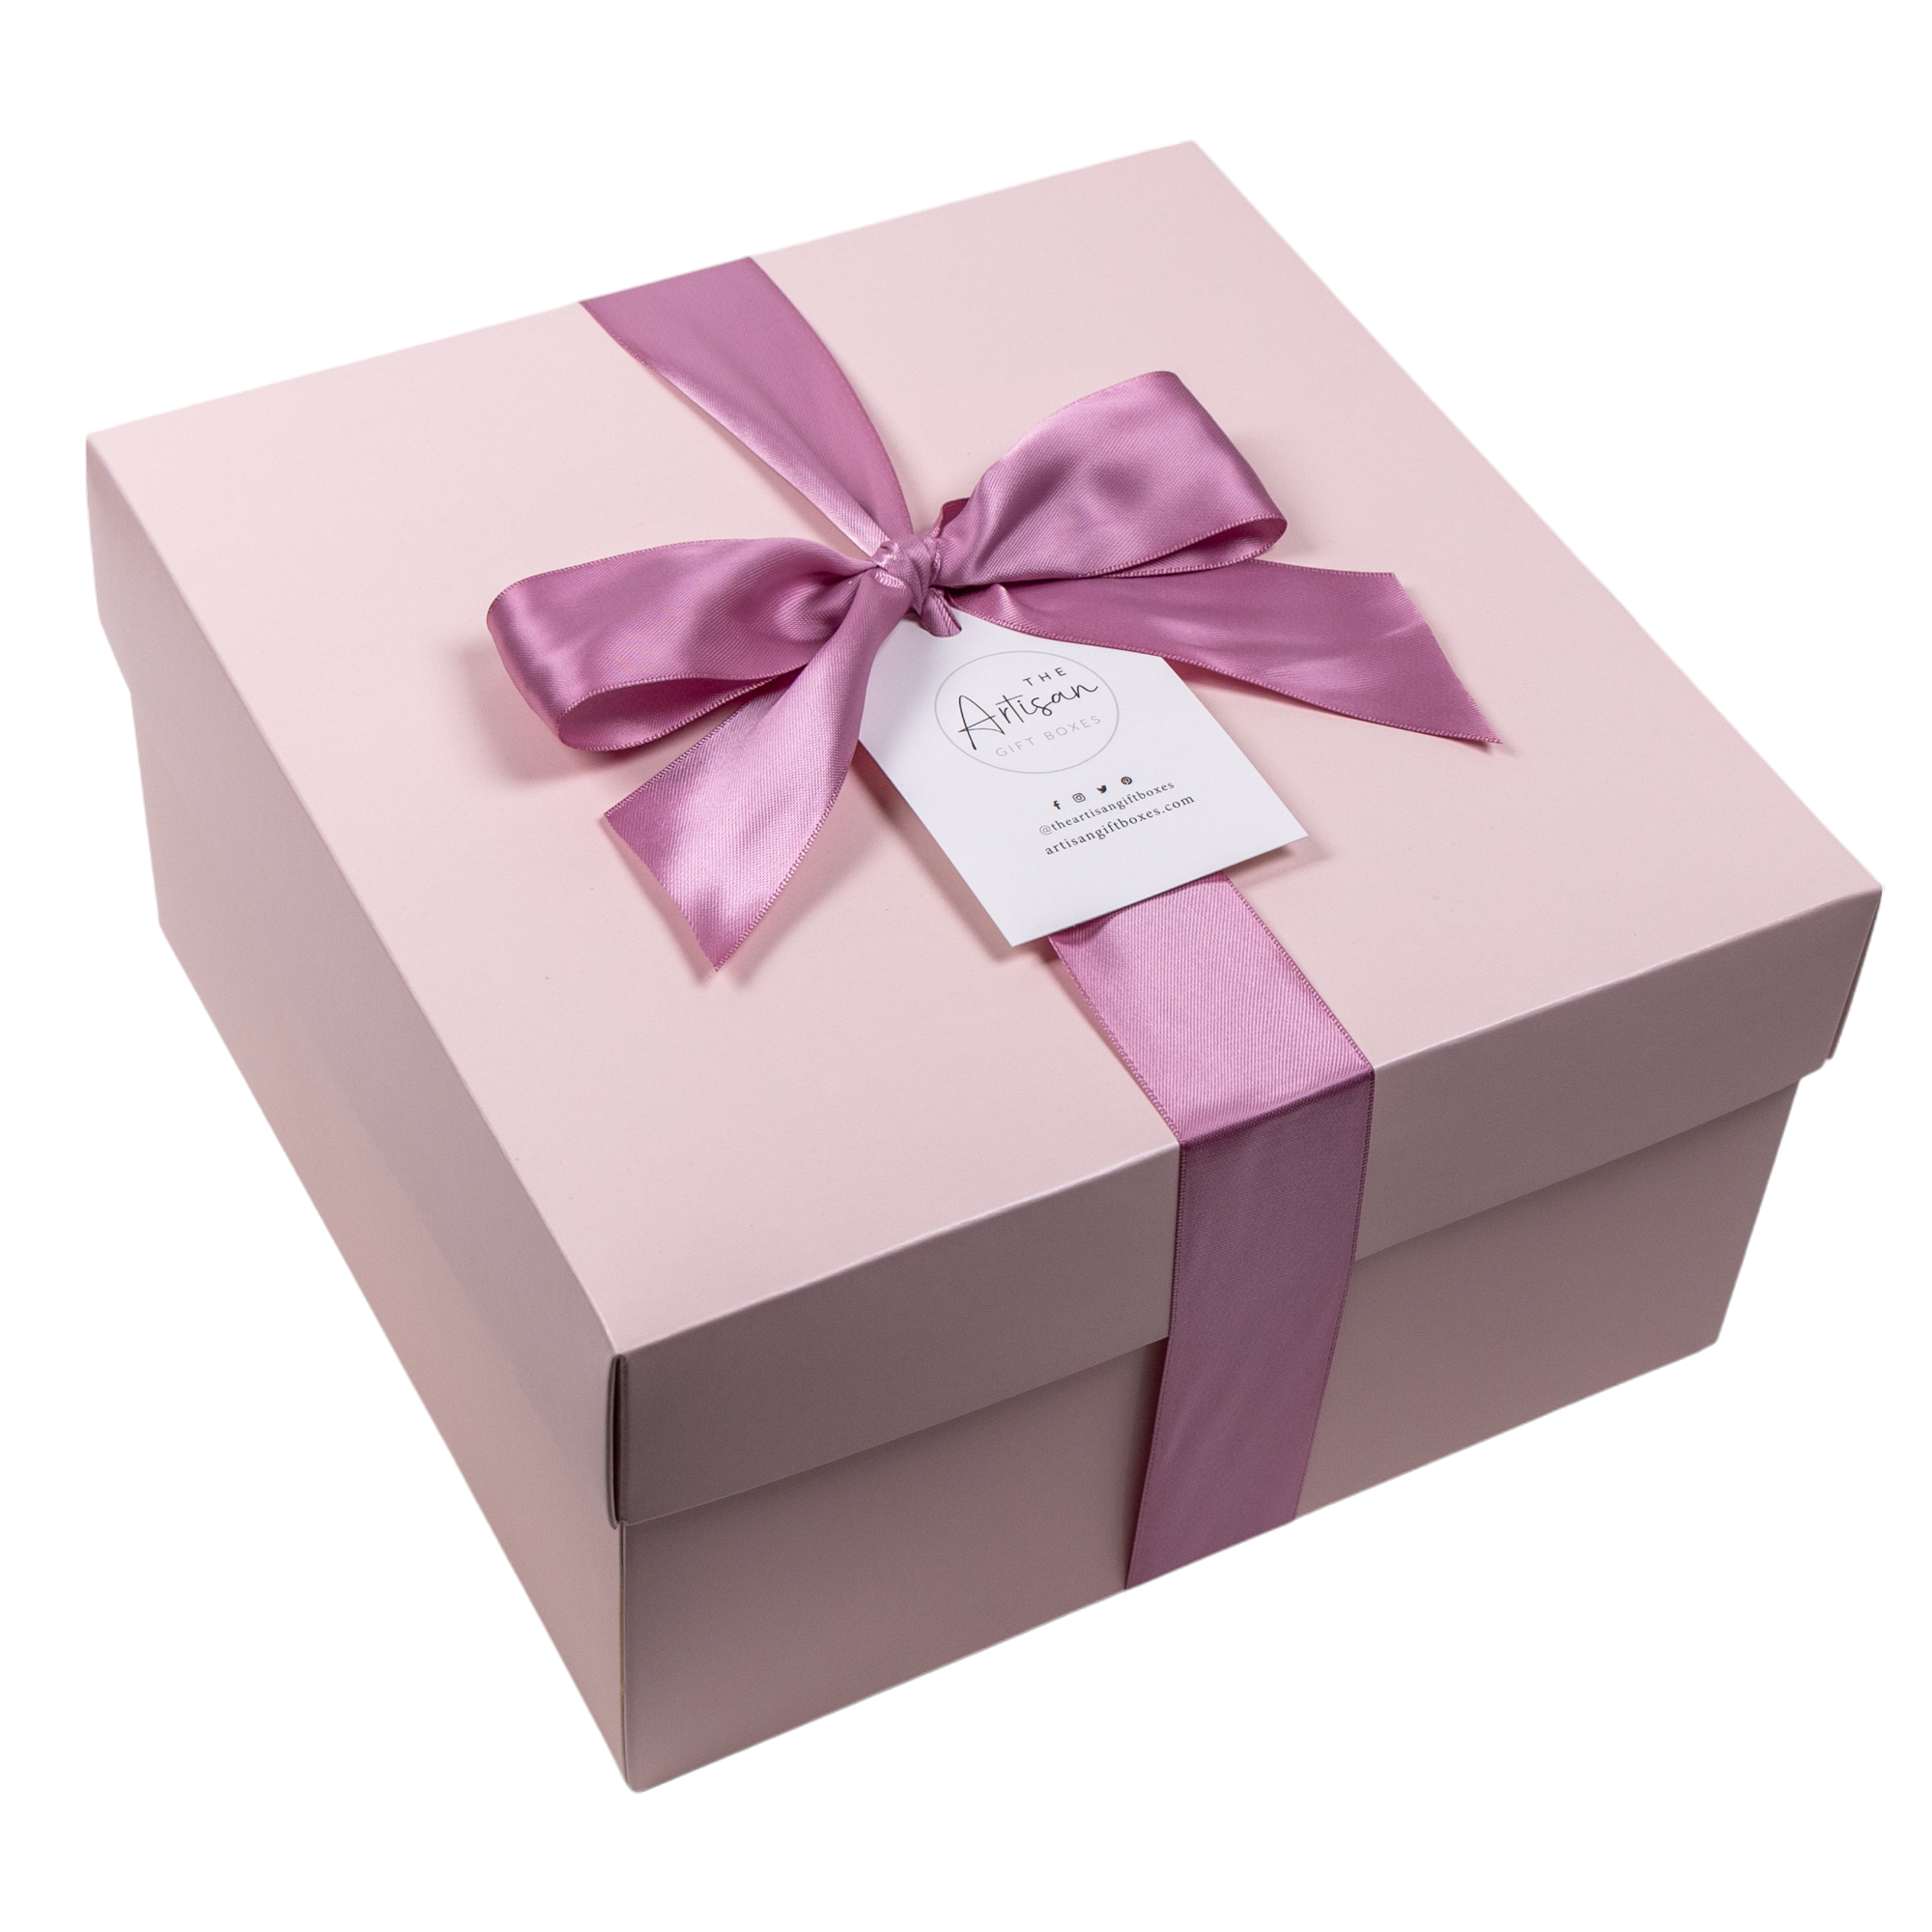 Calm Gift Box